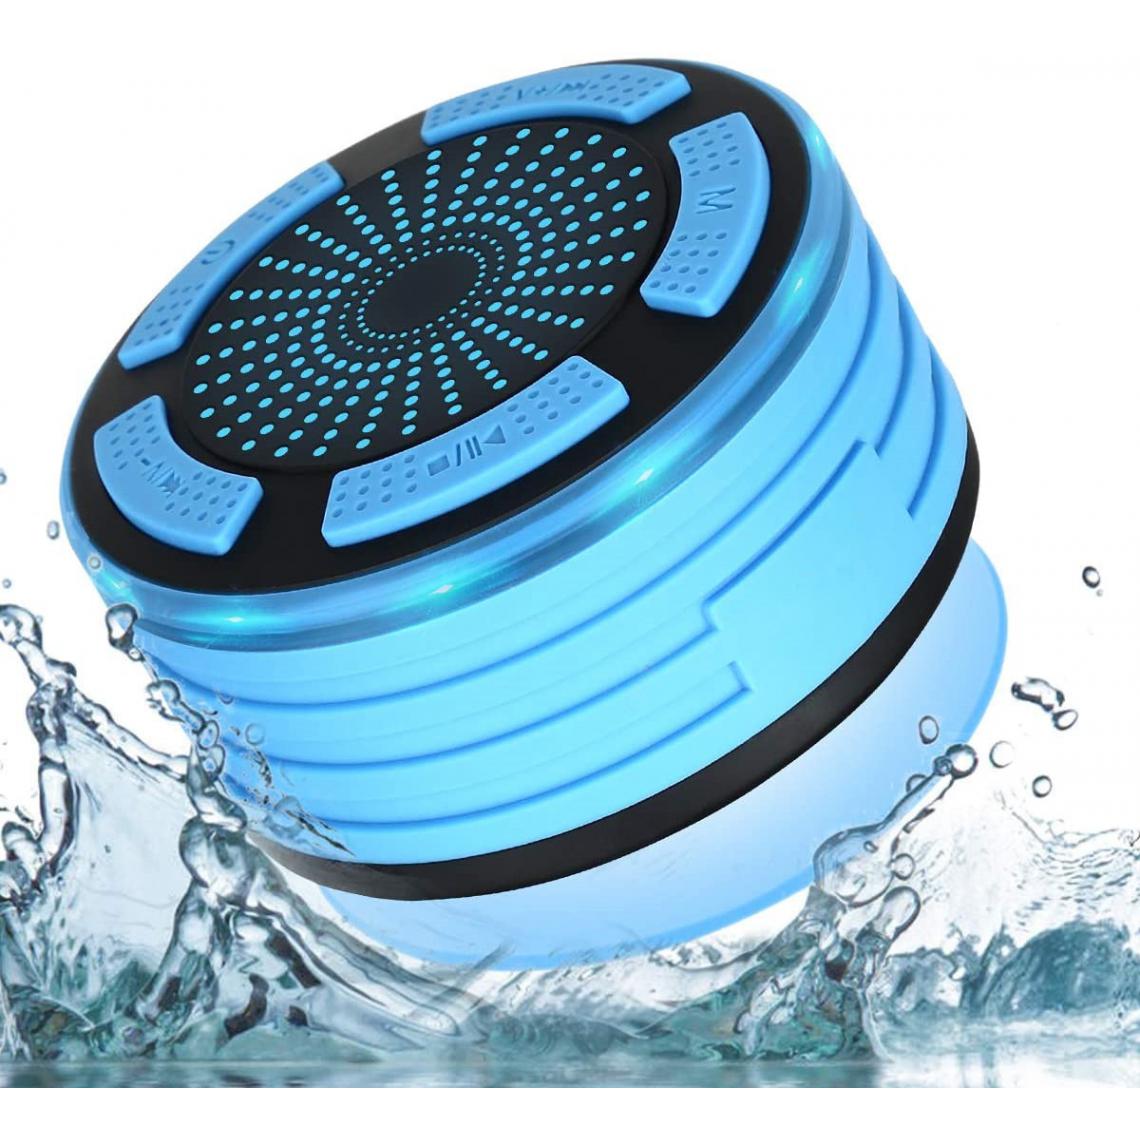 Chrono - Enceinte Bluetooth Étanche Haut-parleur Douche Sans Fil Portable étanche Douche Haut-Parleur avec Radio FM,Lumières LED ,pour Salle de Bain Piscine Plage Cuisine Extérieure,Blue - Enceintes Hifi